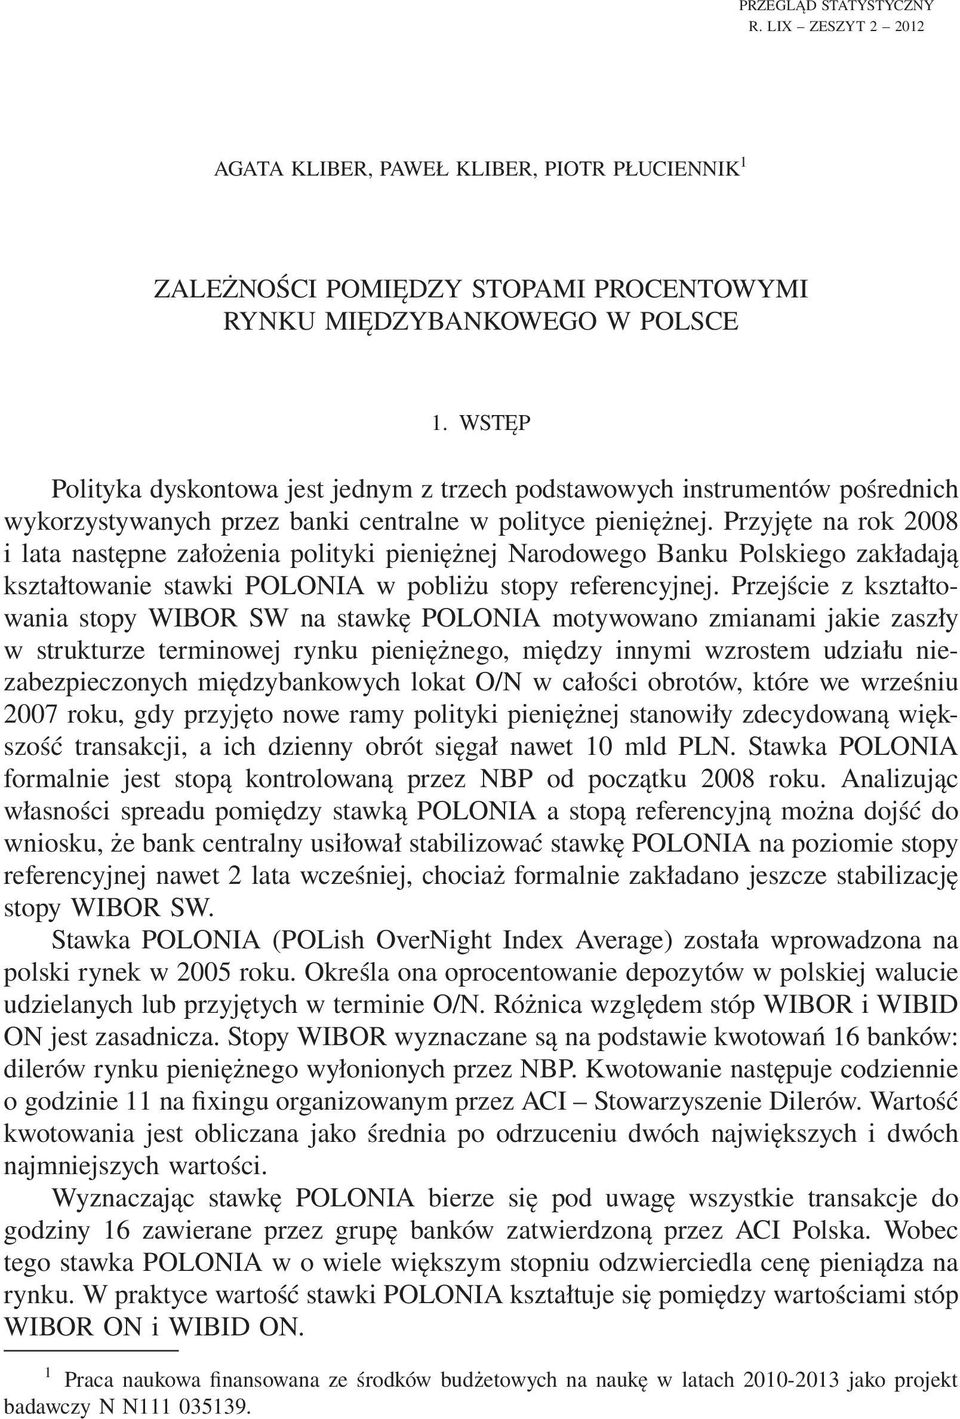 Przyjęte na rok 2008 i lata następne założenia polityki pieniężnej Narodowego Banku Polskiego zakładają kształtowanie stawki POLONIA w pobliżu stopy referencyjnej.